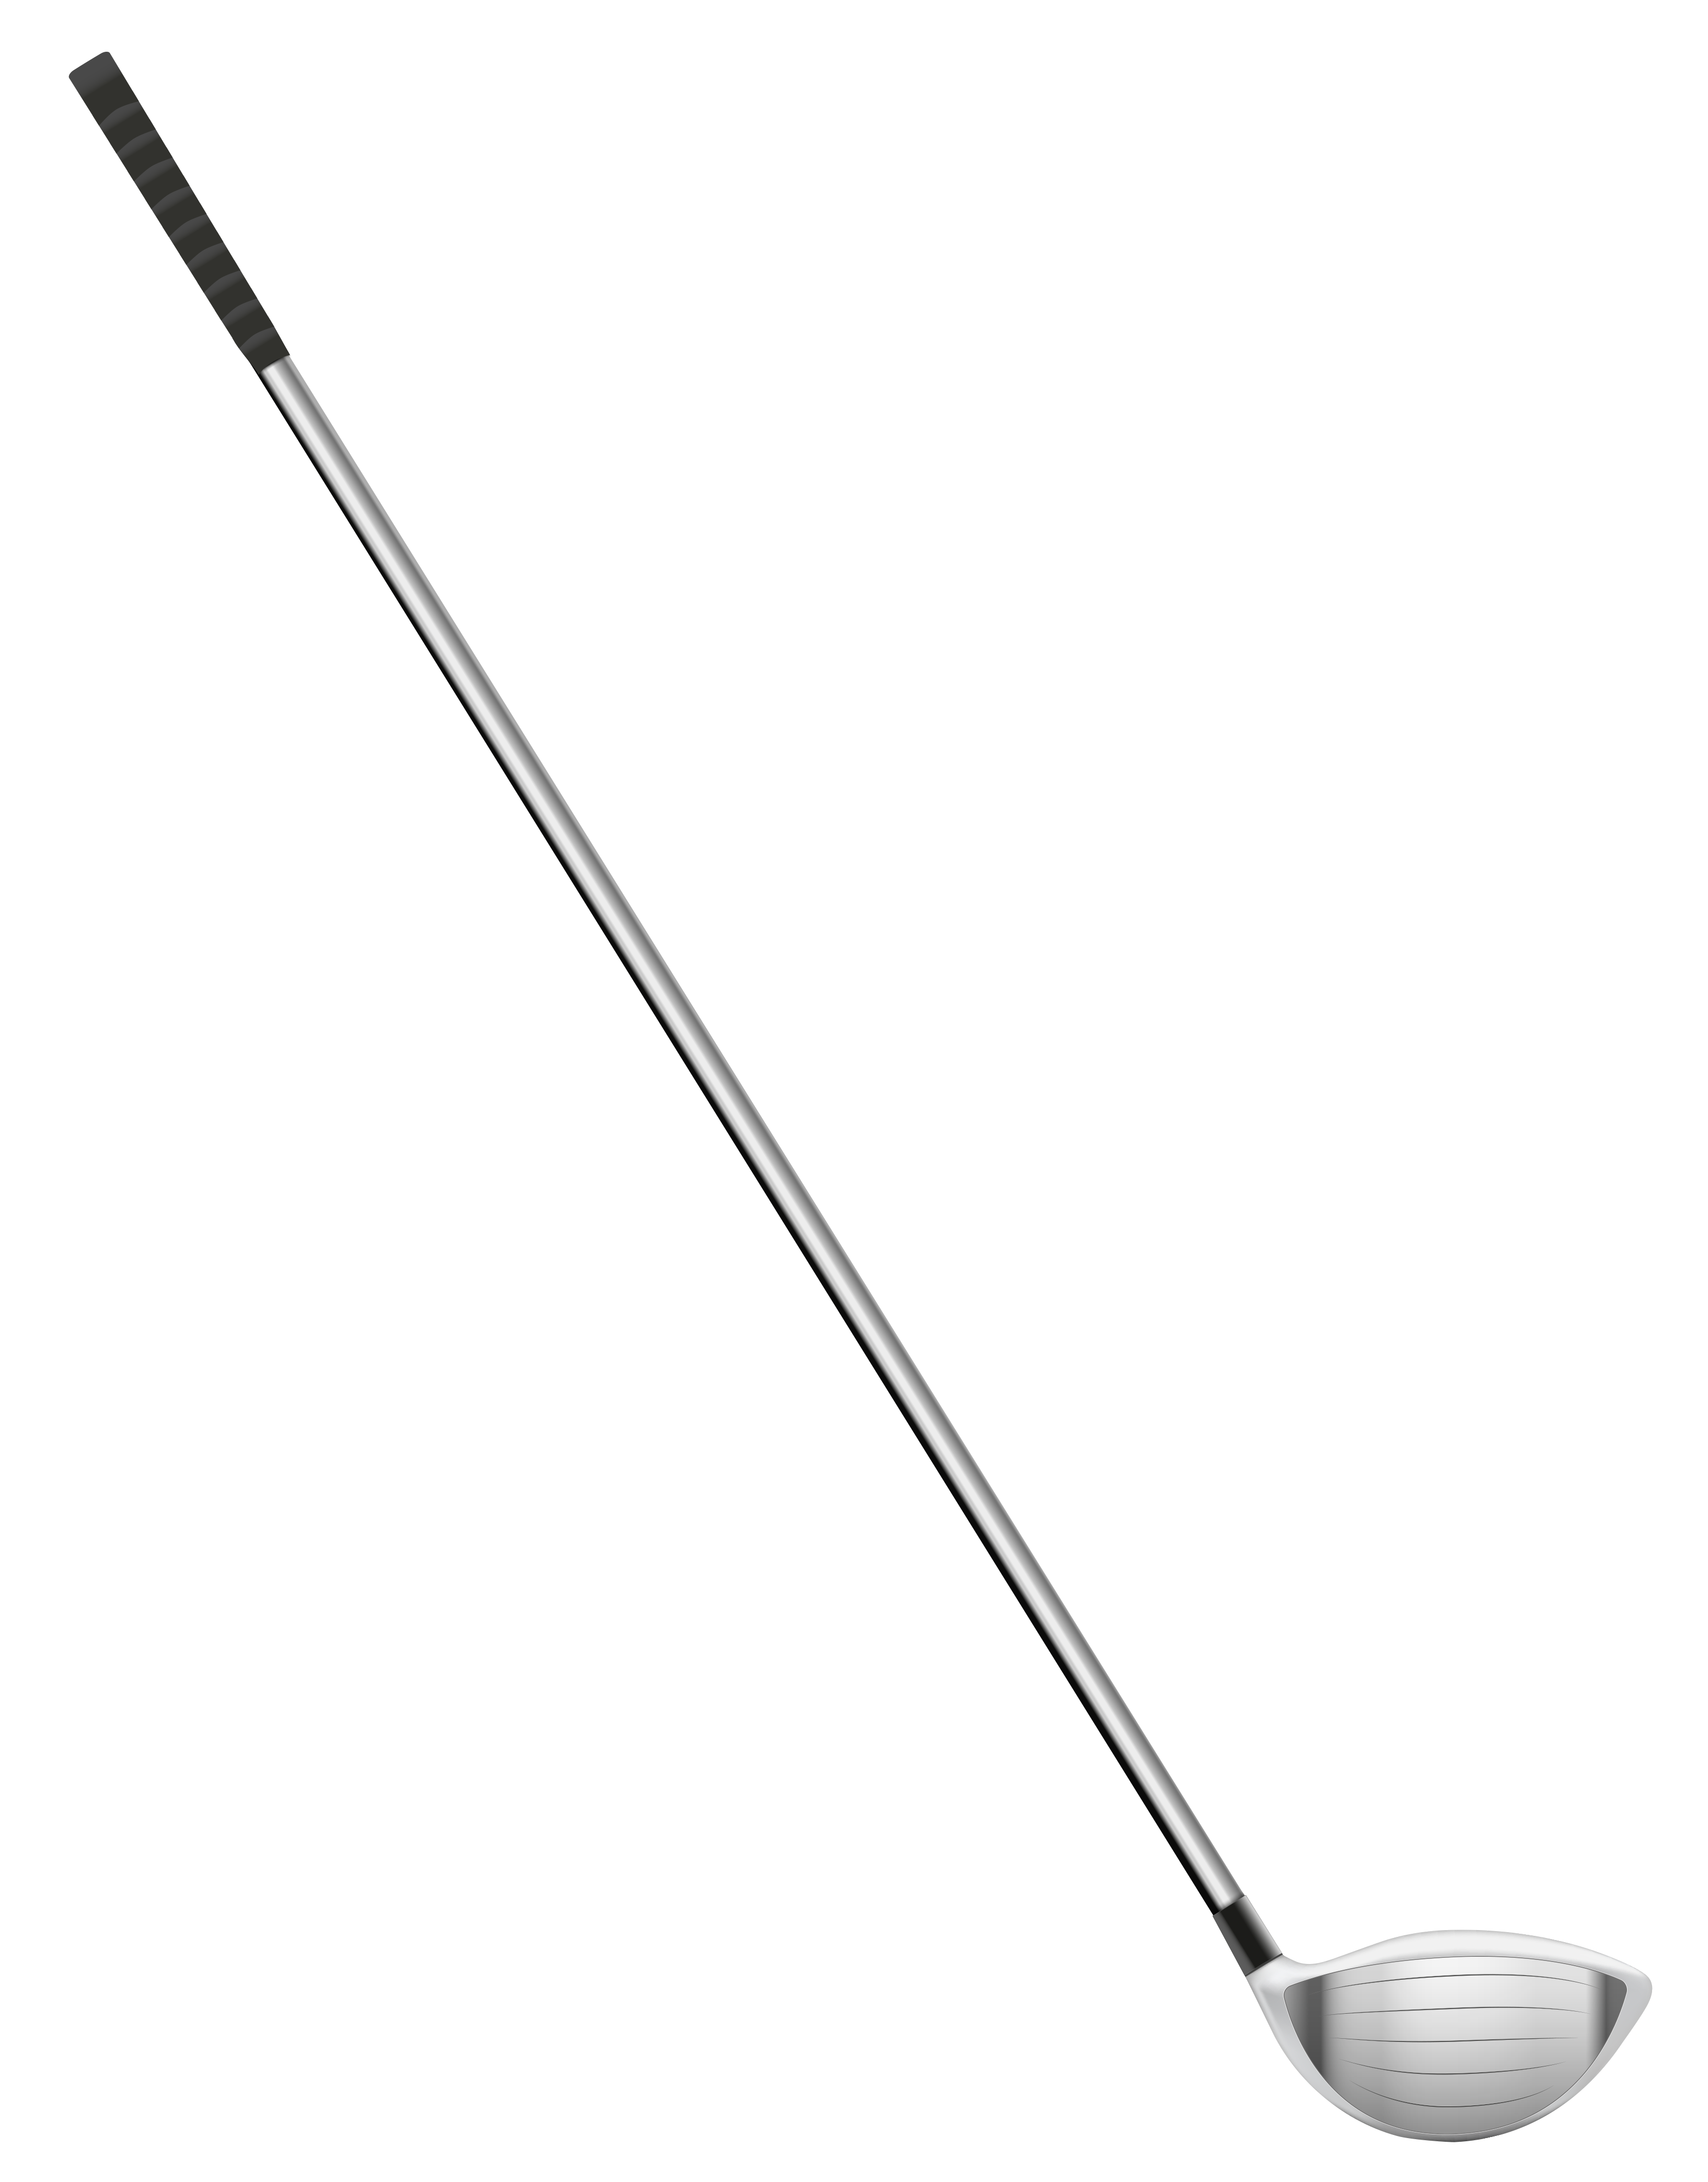 Golf club stick clipart picture famclipart - Clipartix